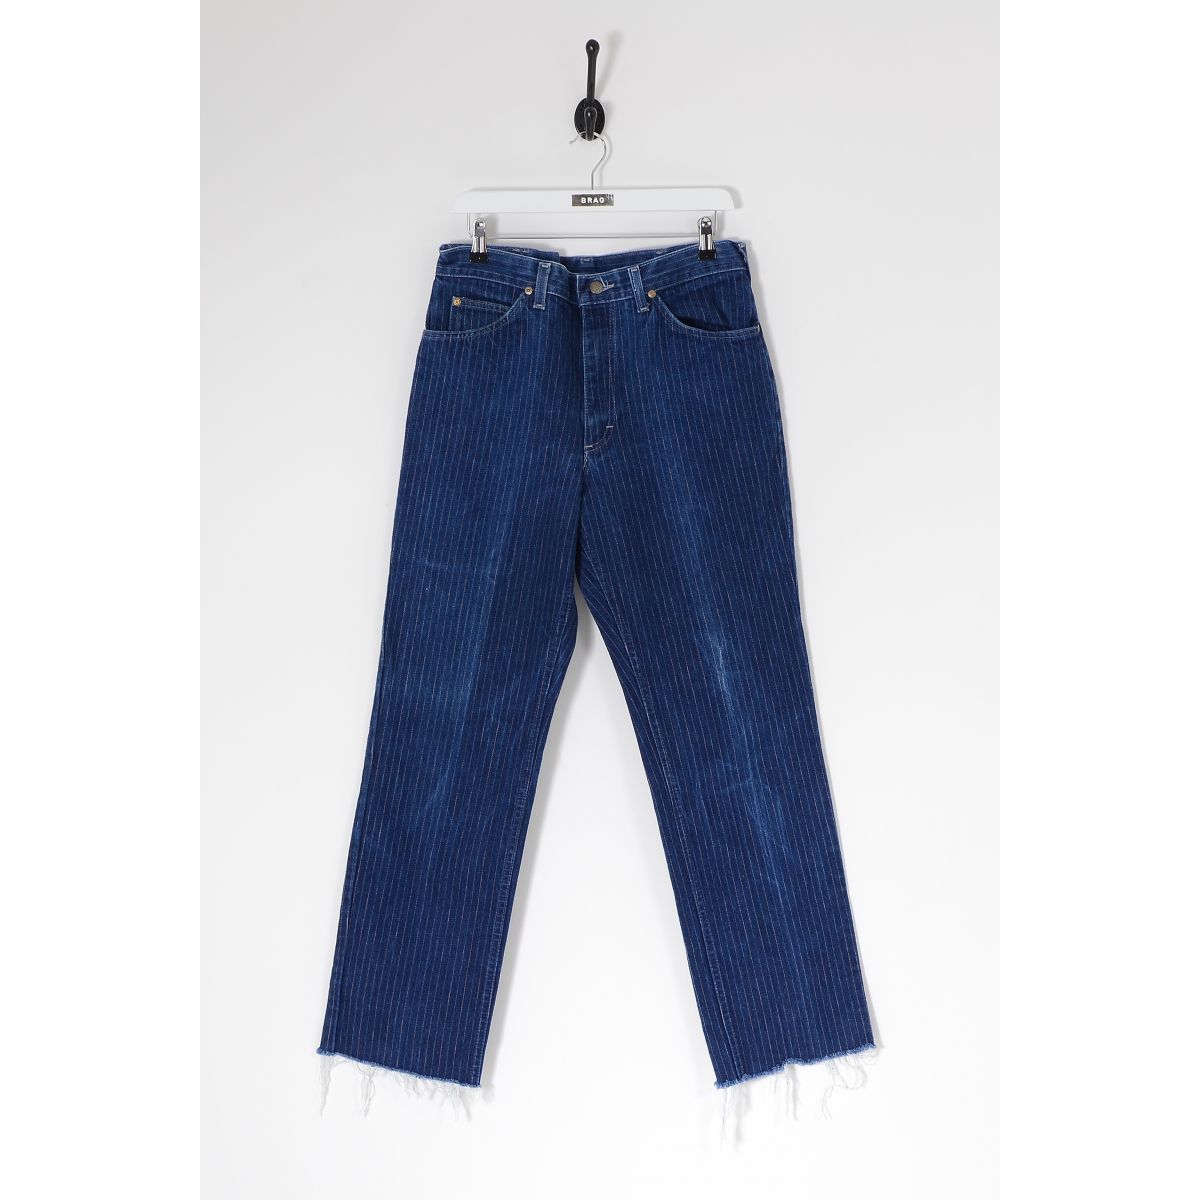 Vintage LEE Raw Cut Pinstripe Straight Leg Jeans Dark Blue W32 L30